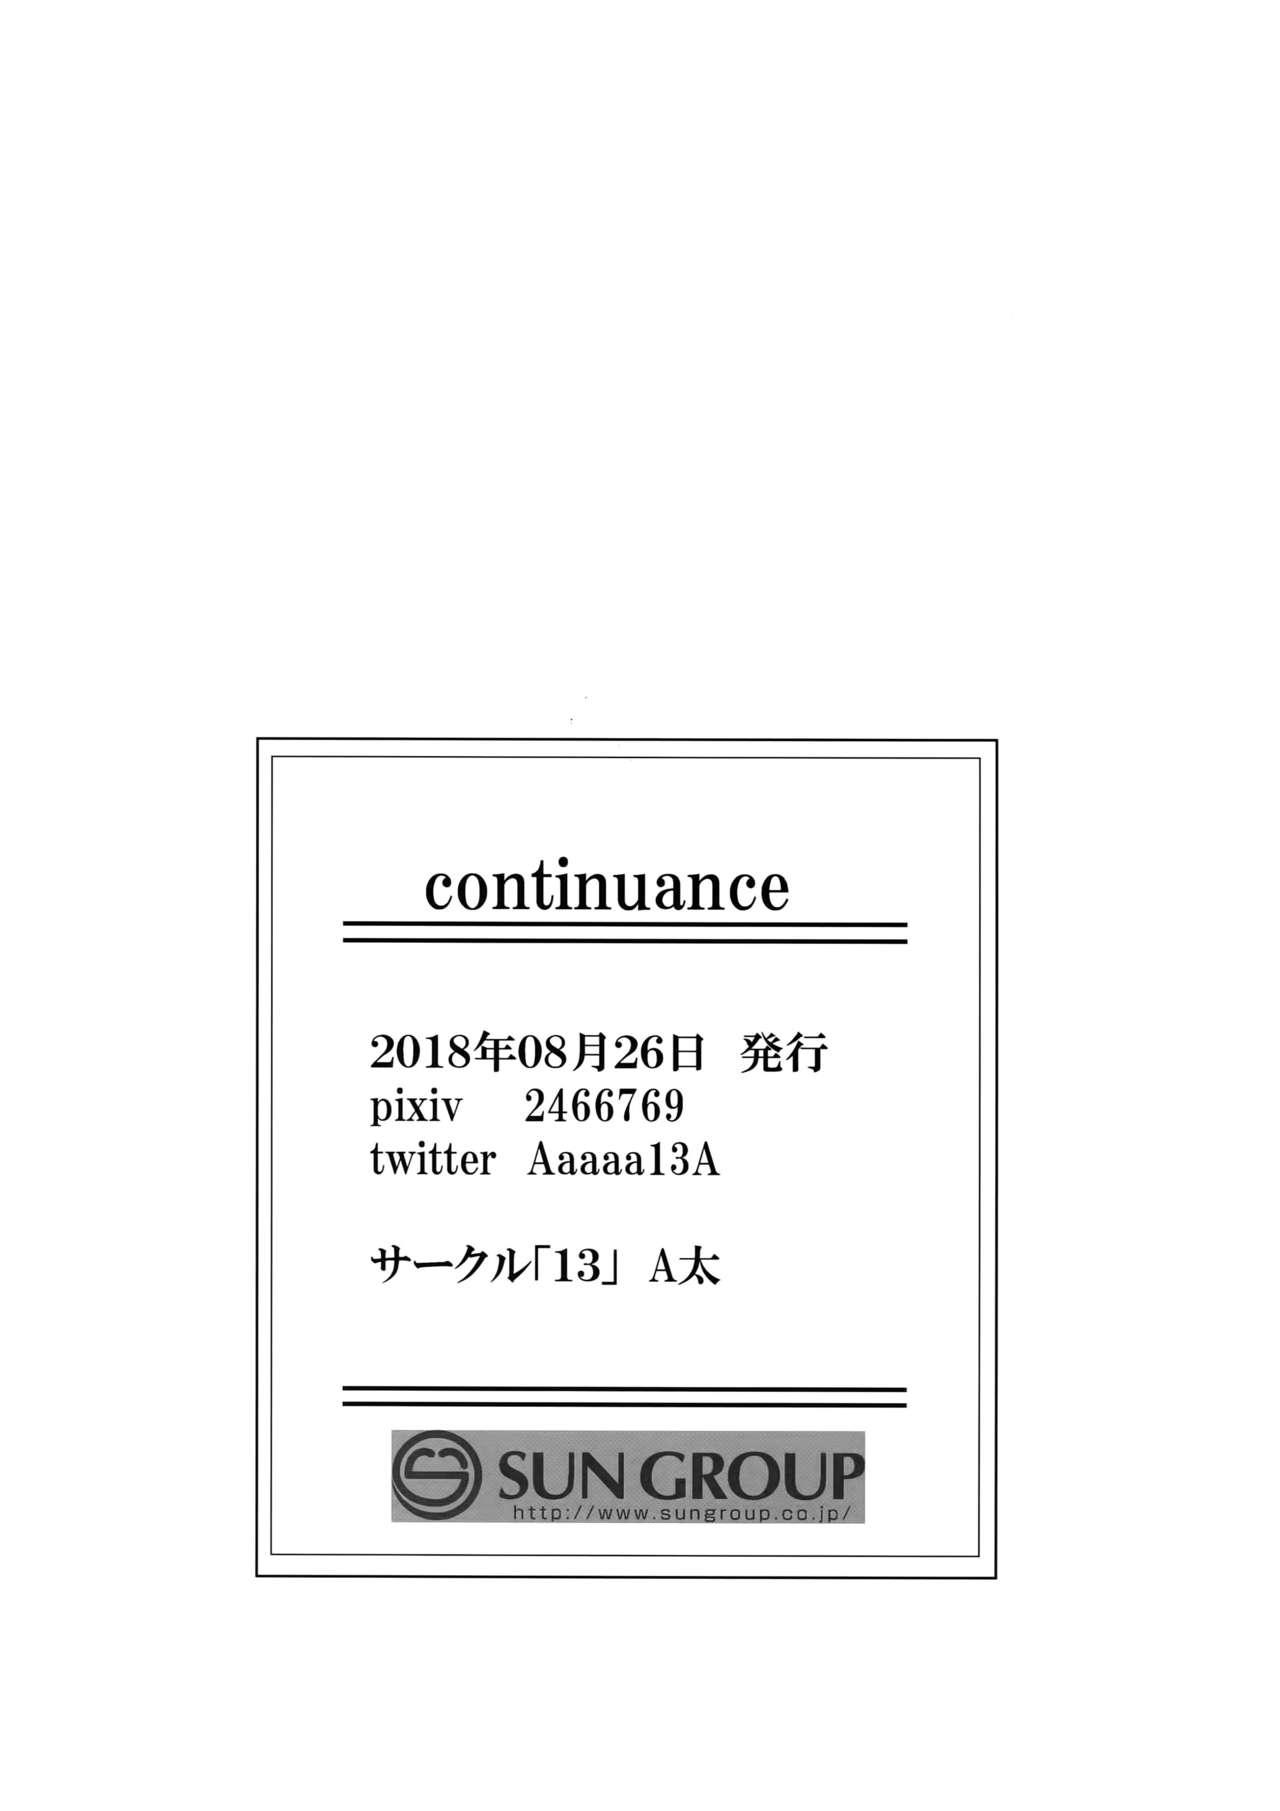 Mature continuance - Shingeki no kyojin Show - Page 29